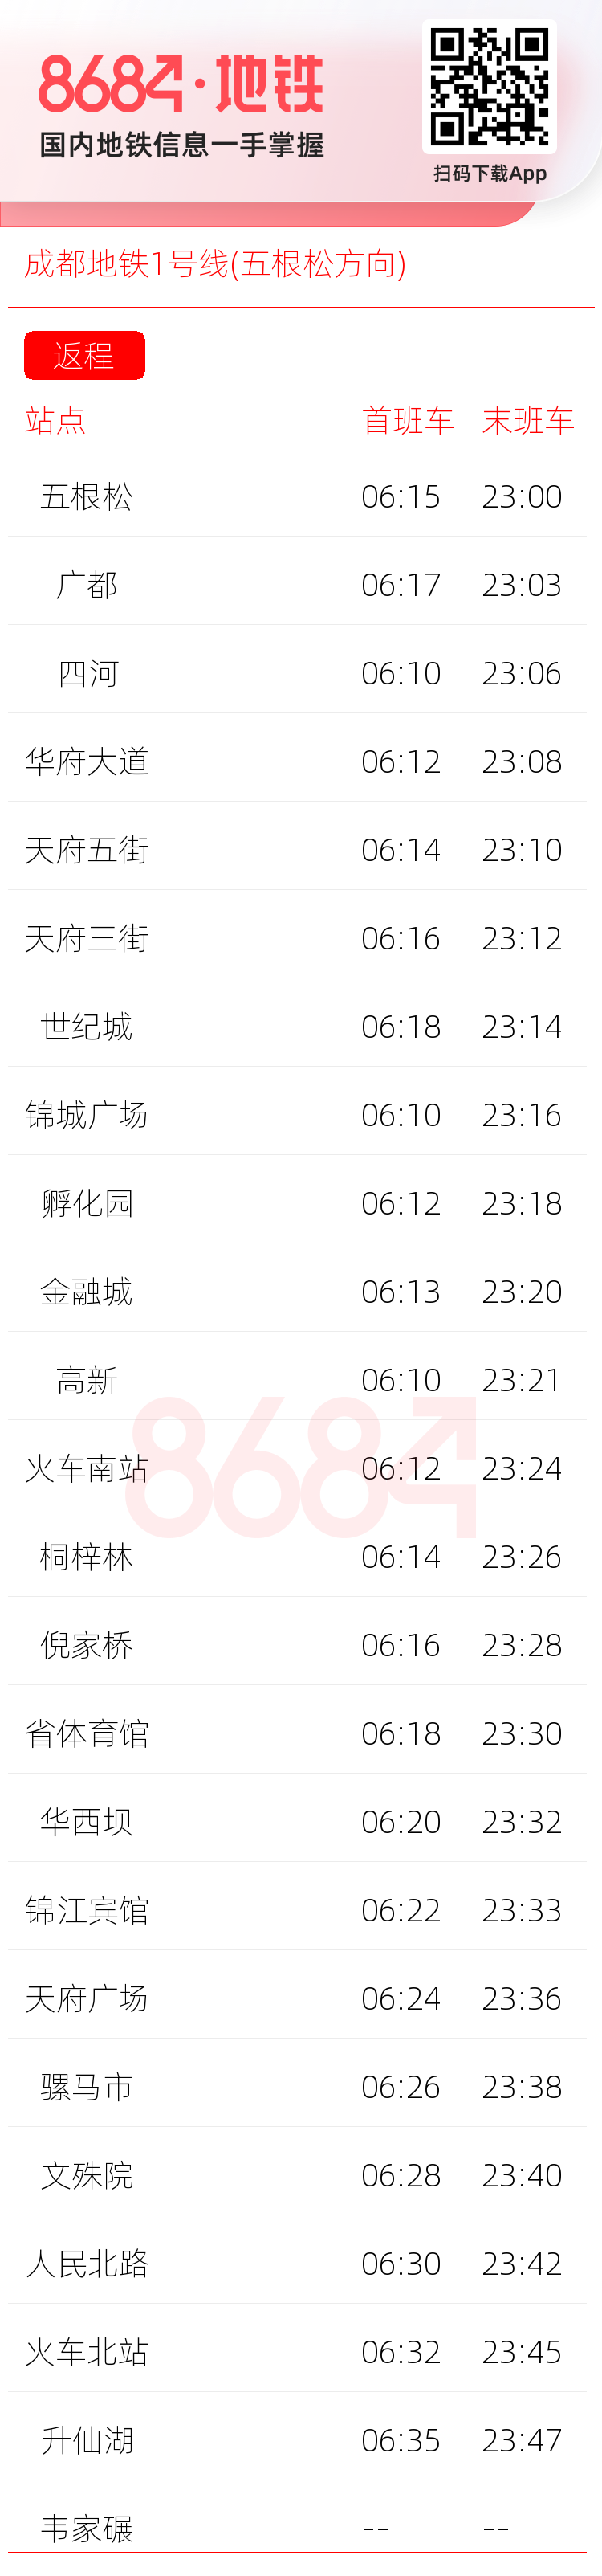 成都地铁1号线(五根松方向)运营时间表